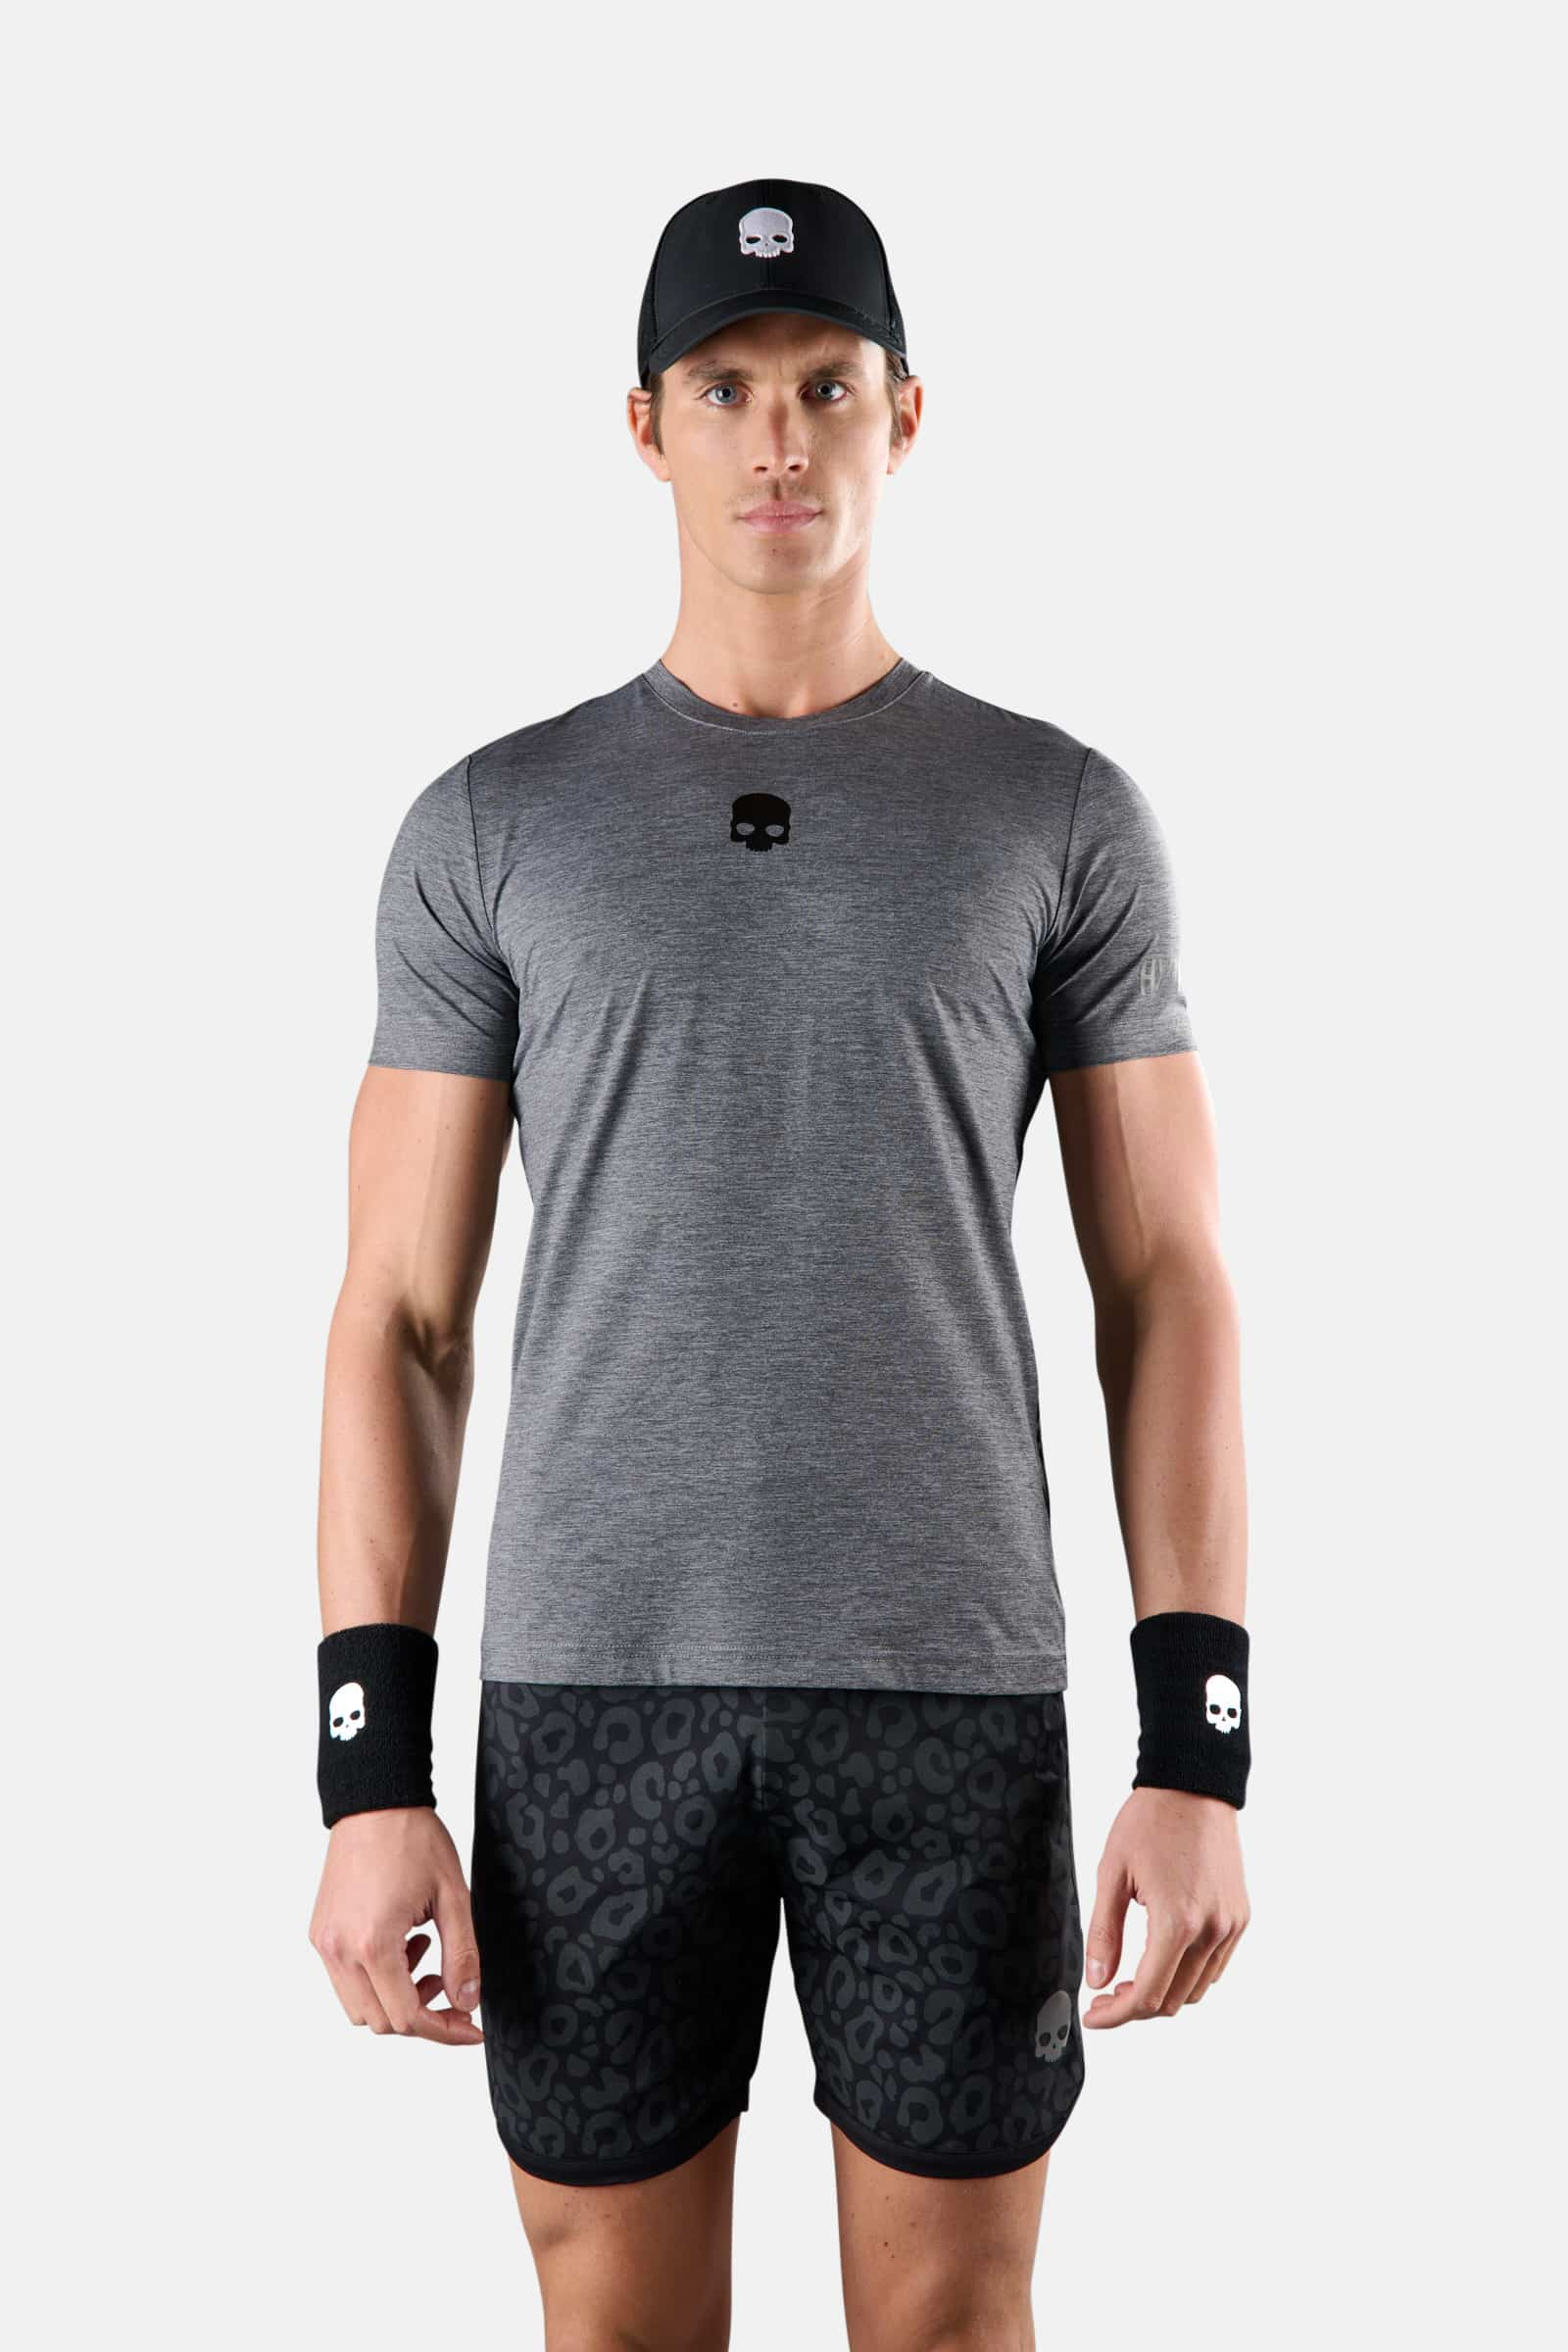 T-SHIRT TECNICA PANTHER - Abbigliamento - Abbigliamento sportivo | Hydrogen